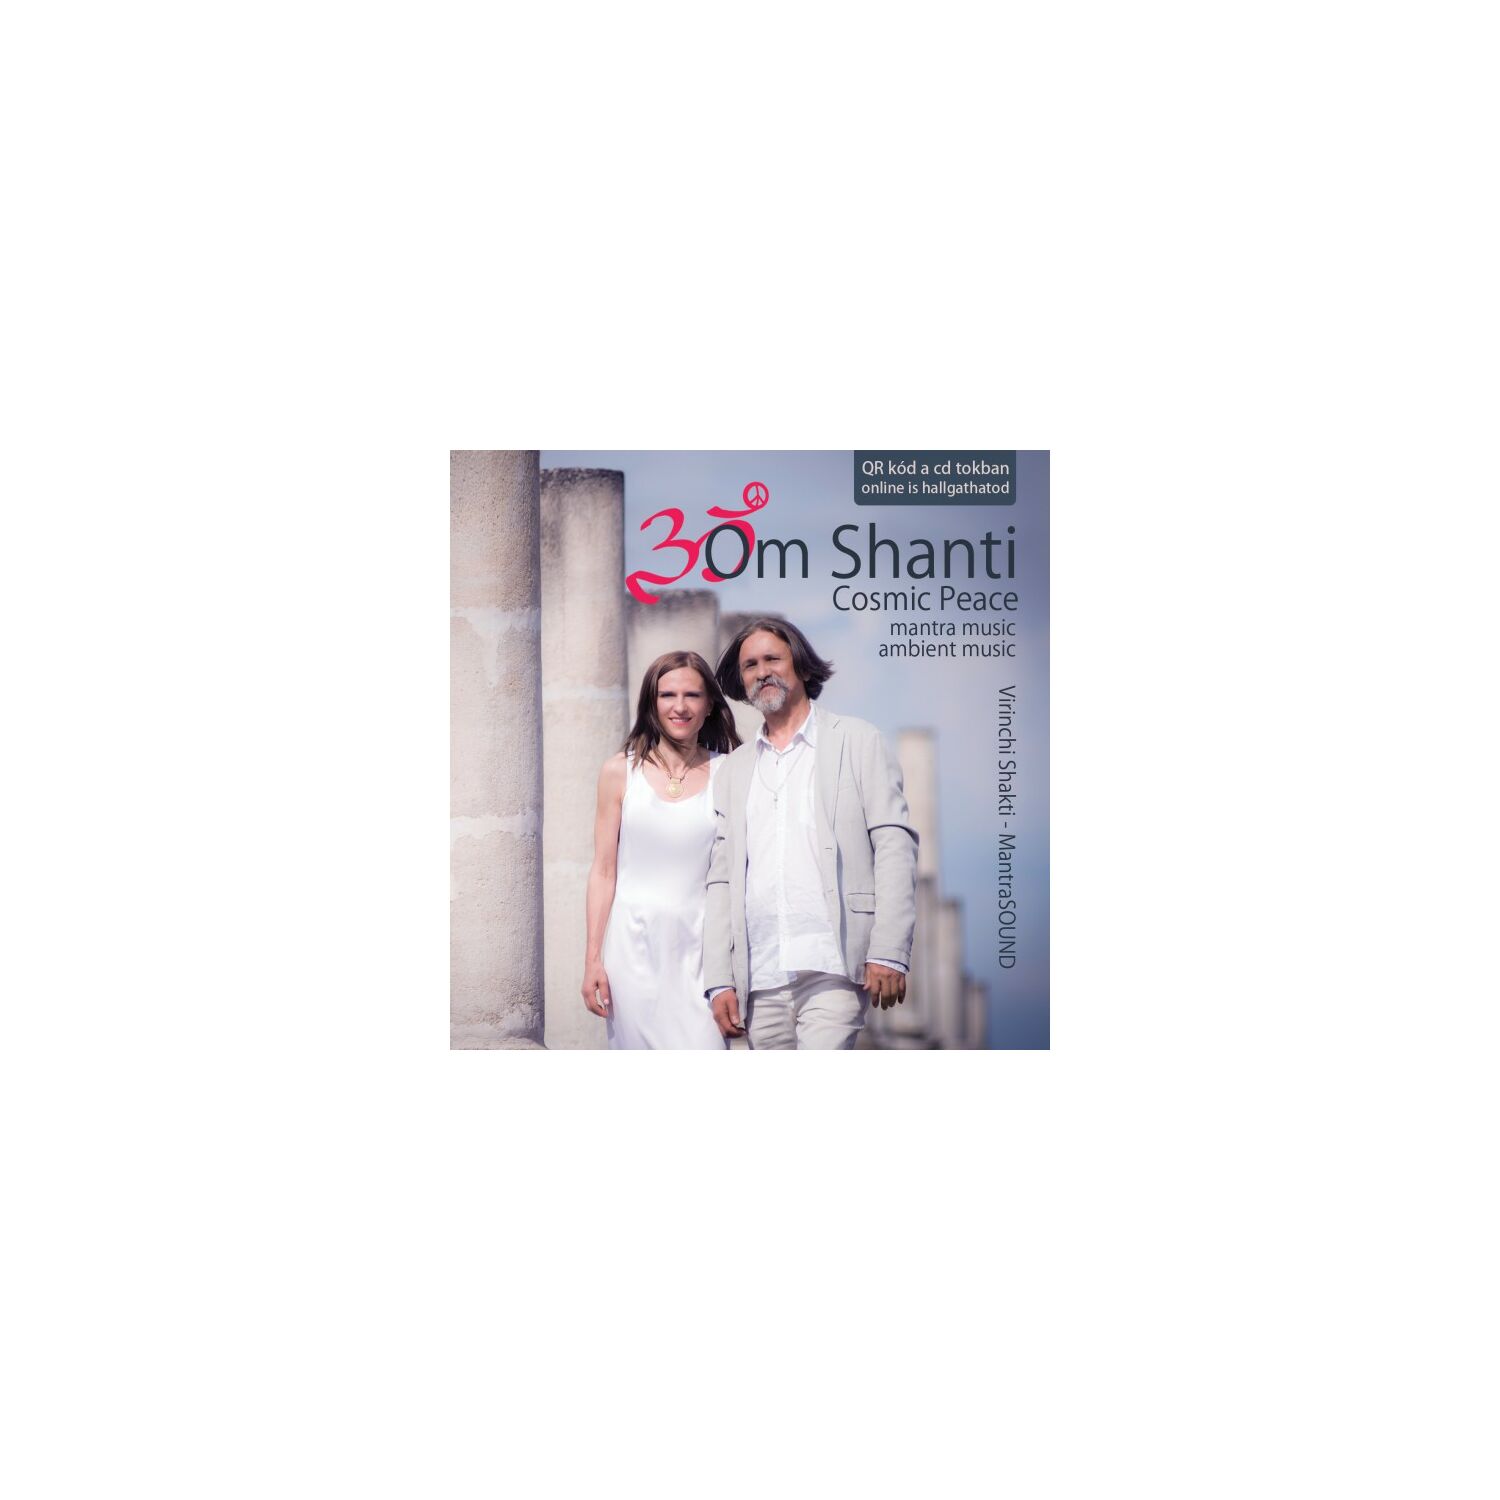 Om shanti - cosmic peace cd